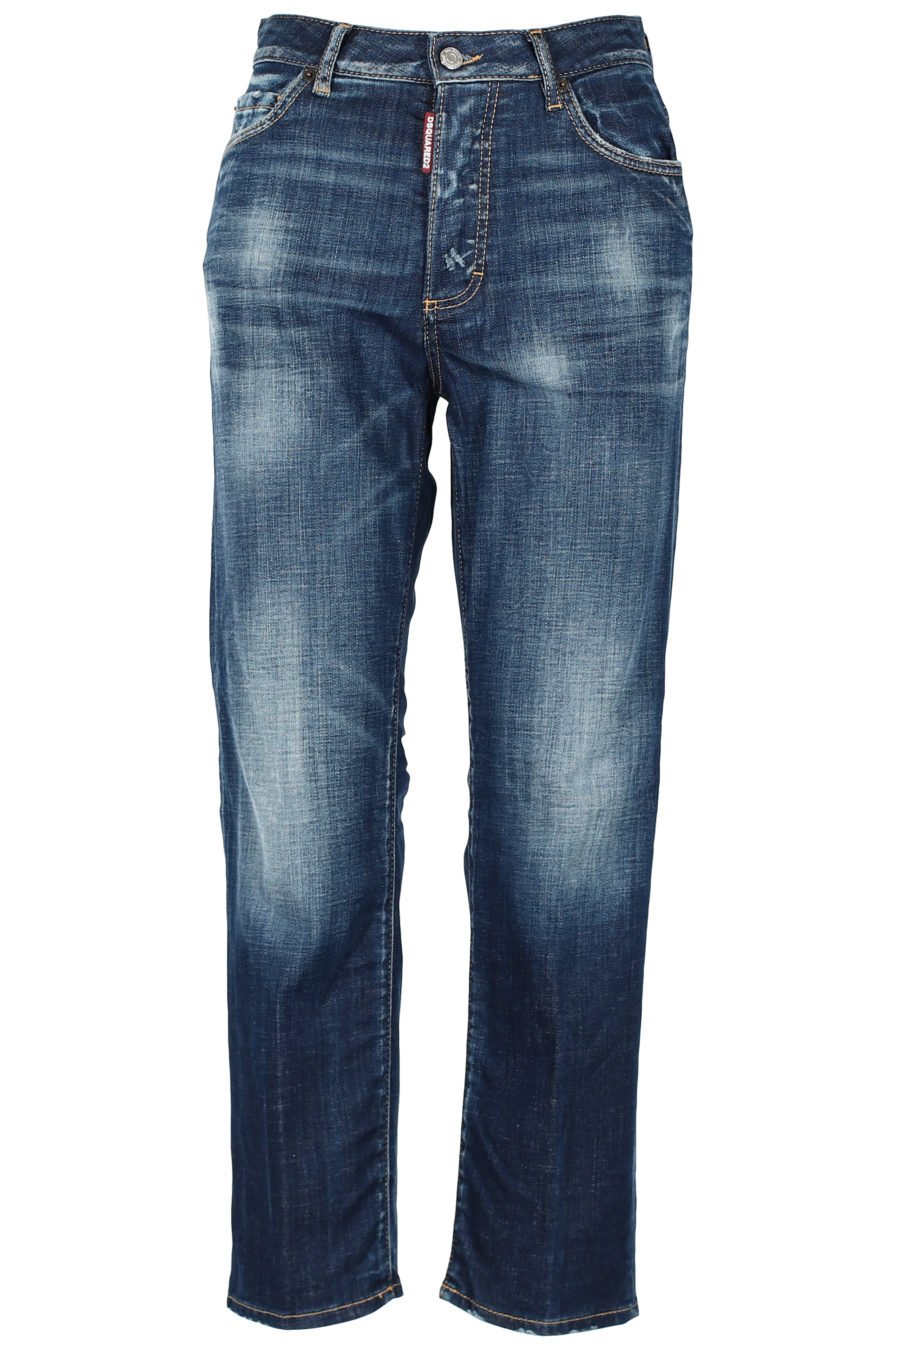 Dunkelblaue Denim-Hose "Boston Jeans" - IMG 3224